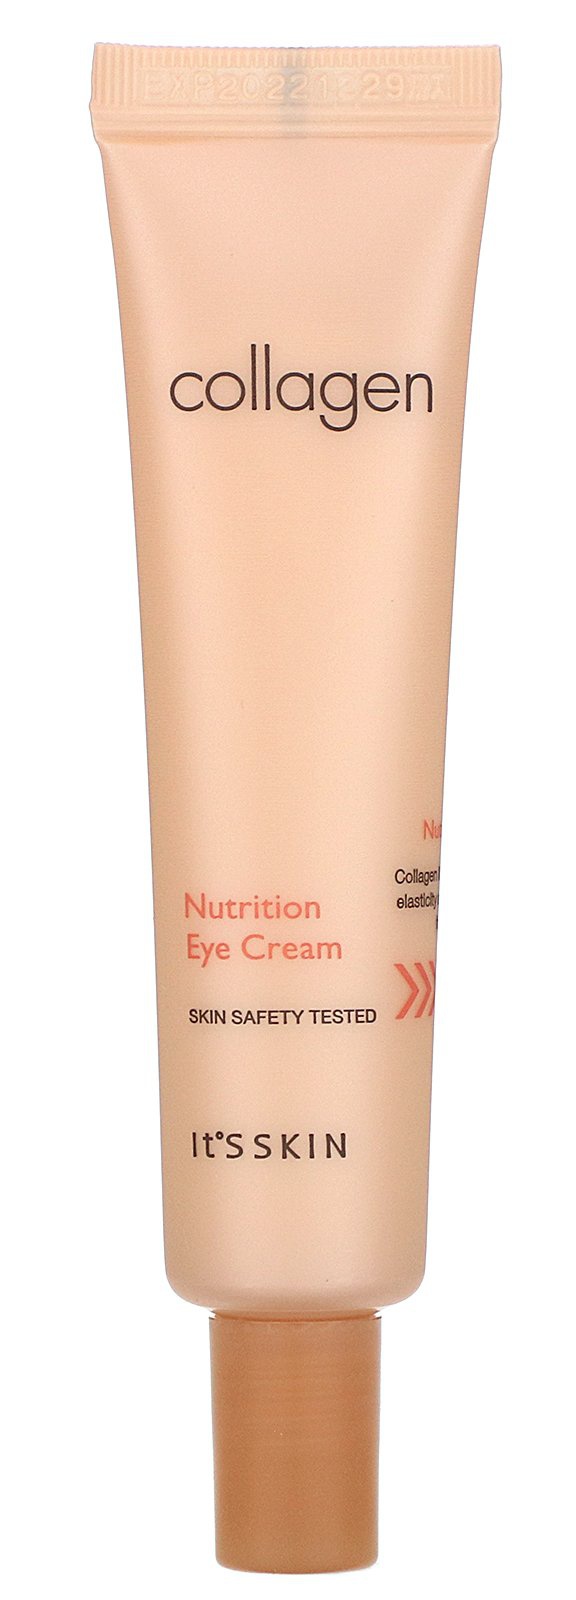 It's Skin Collagen Nutrition Eye Cream